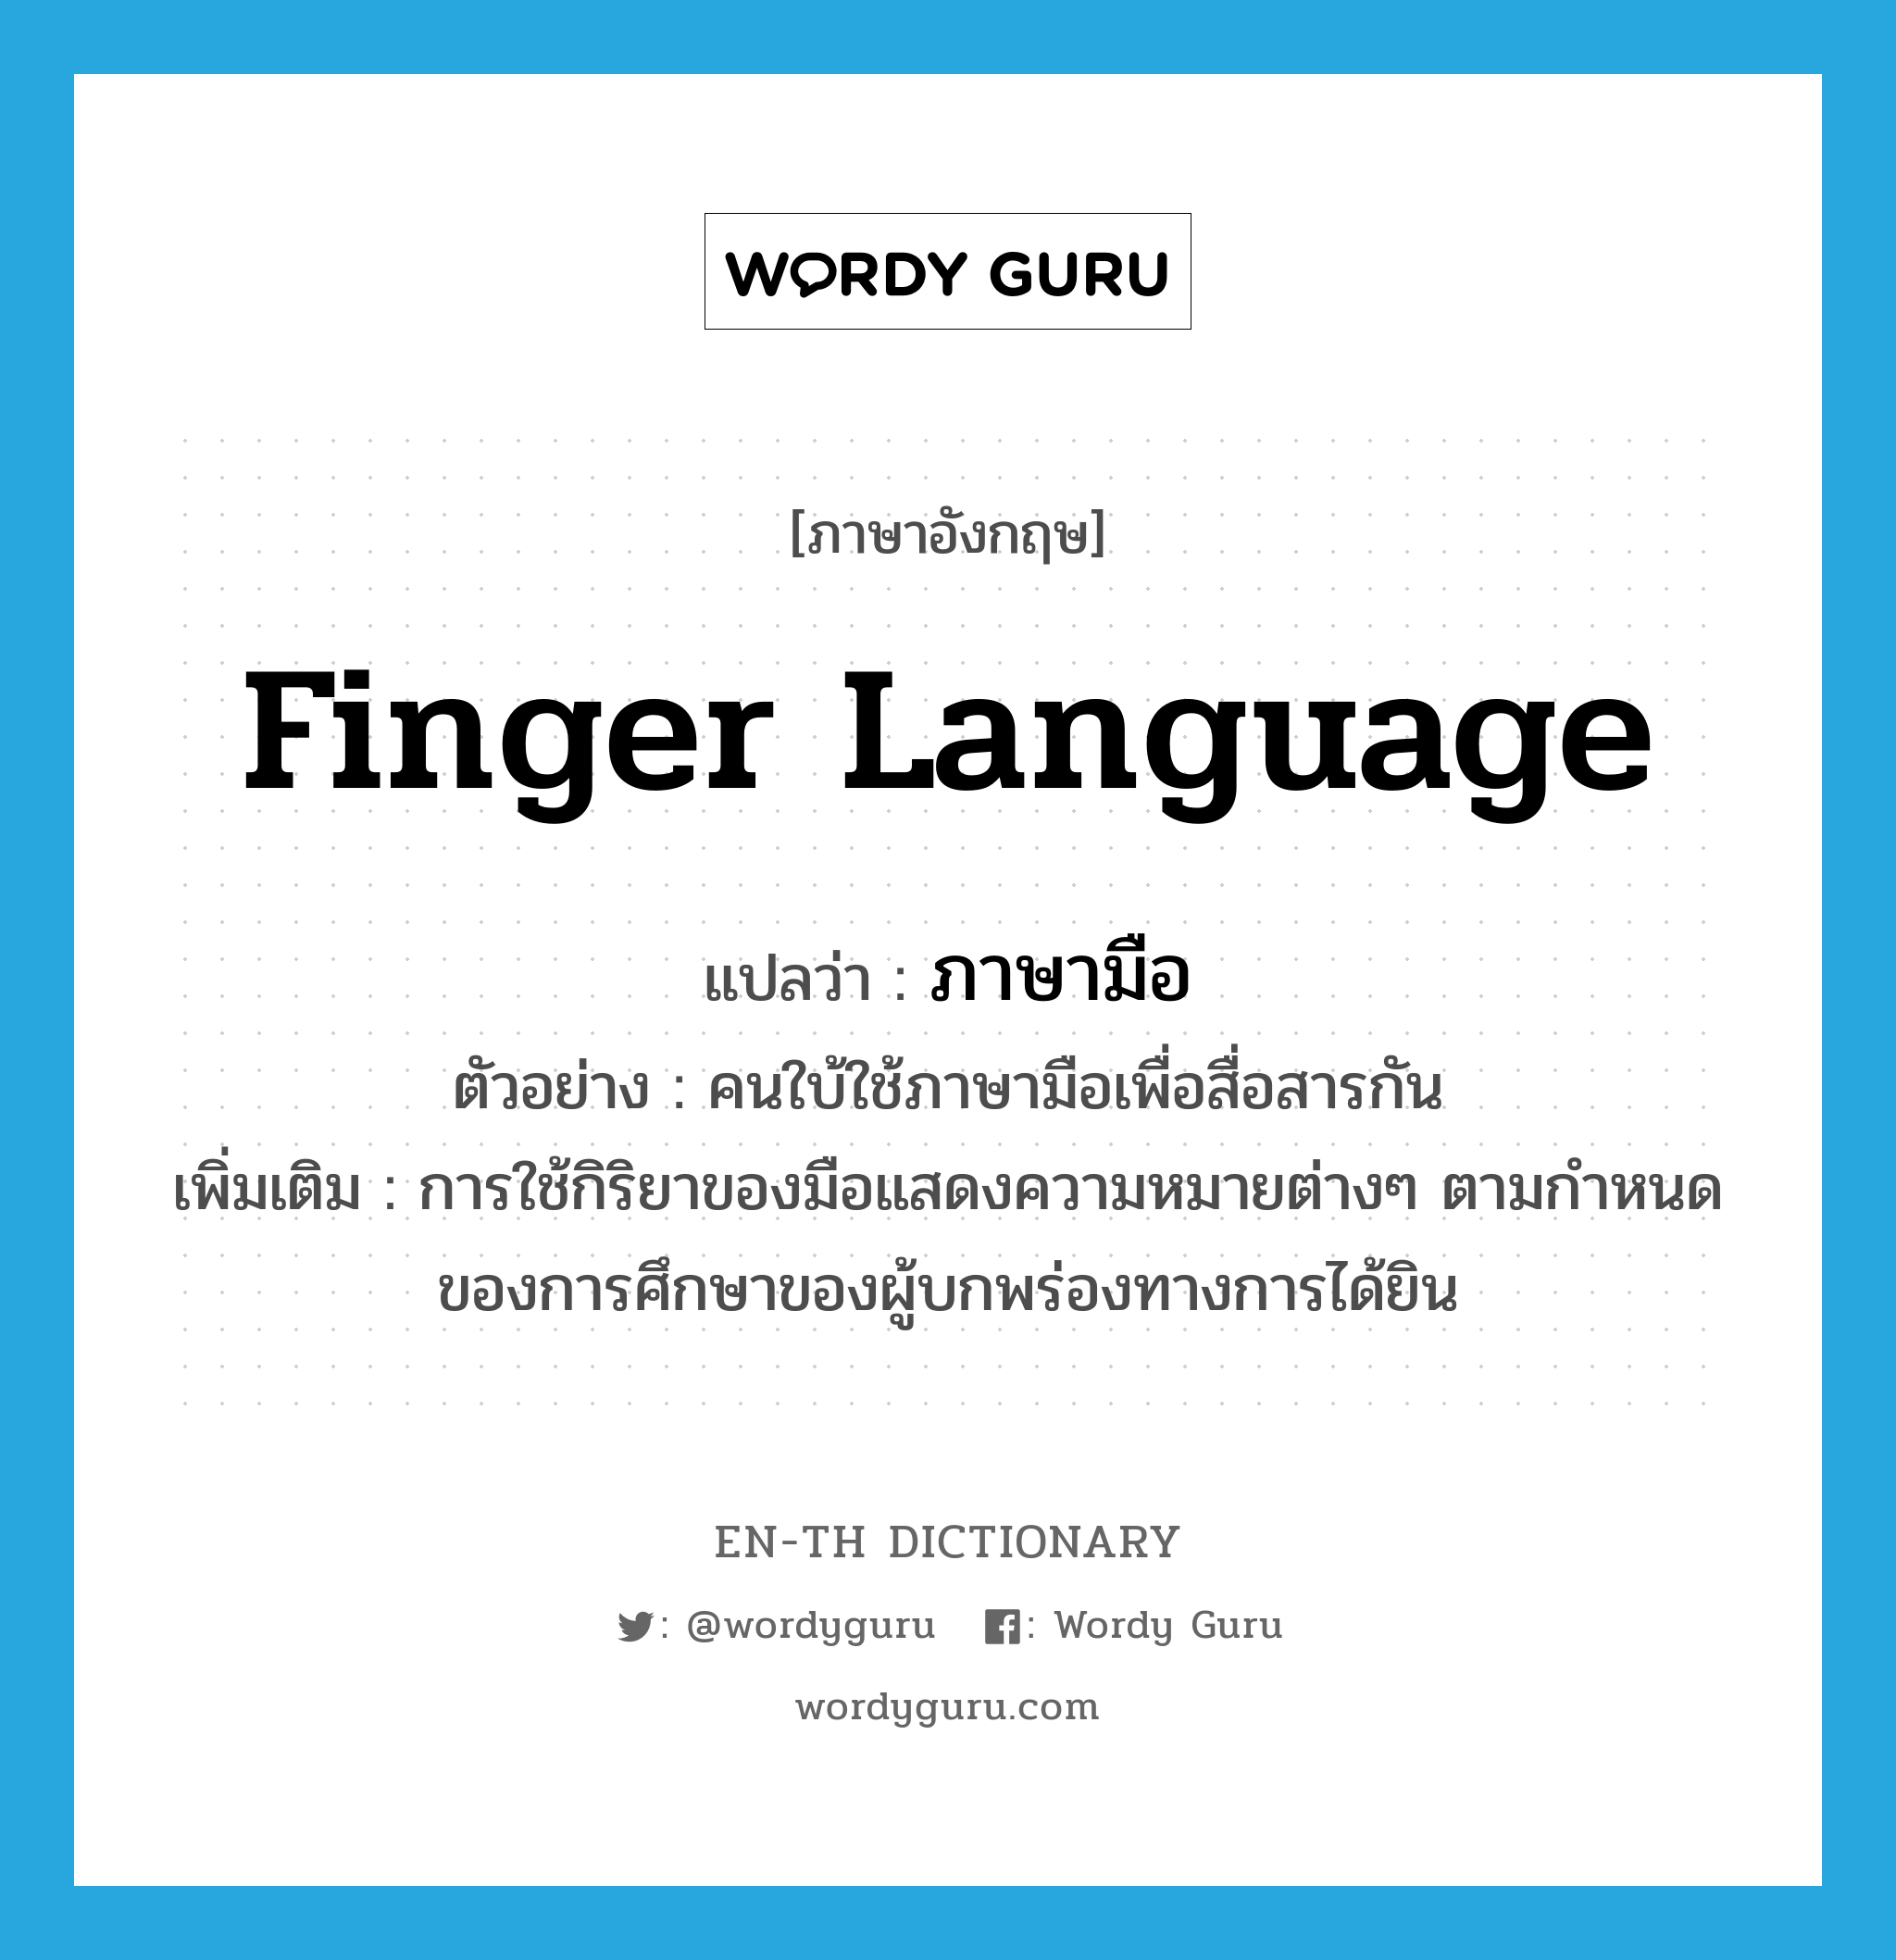 ภาษามือ ภาษาอังกฤษ?, คำศัพท์ภาษาอังกฤษ ภาษามือ แปลว่า finger language ประเภท N ตัวอย่าง คนใบ้ใช้ภาษามือเพื่อสื่อสารกัน เพิ่มเติม การใช้กิริยาของมือแสดงความหมายต่างๆ ตามกำหนดของการศึกษาของผู้บกพร่องทางการได้ยิน หมวด N